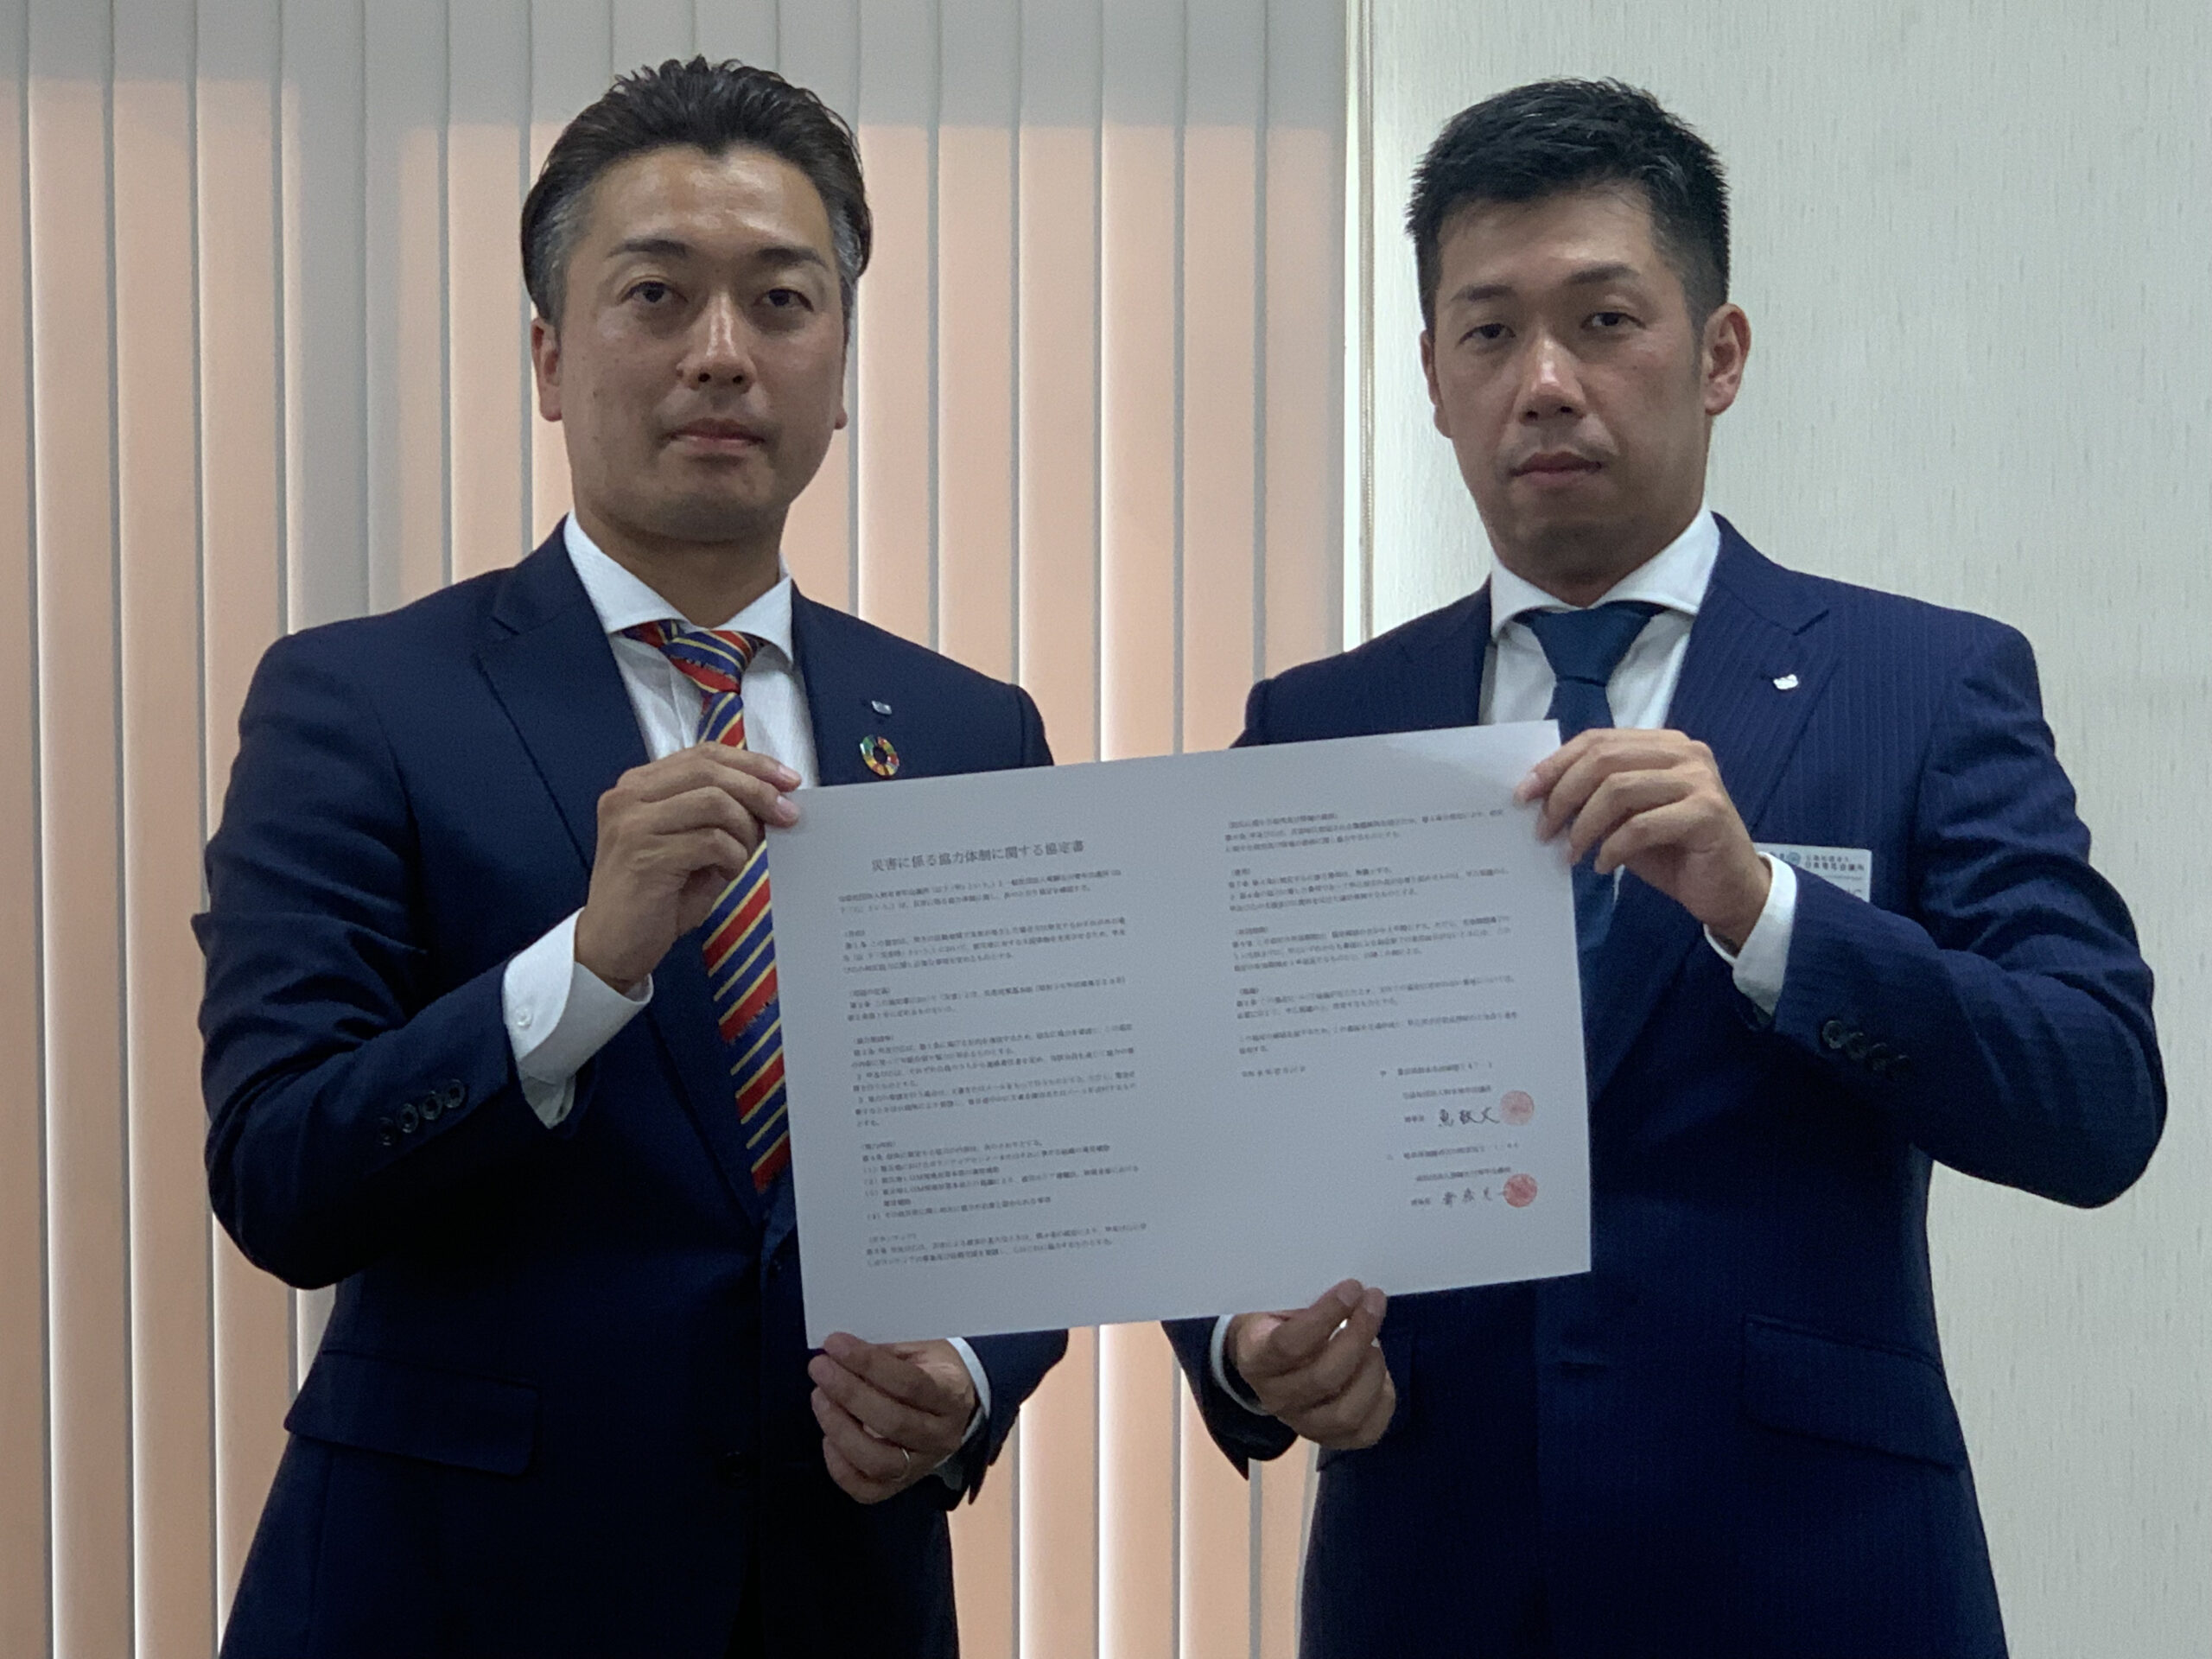 一般社団法人飛騨古川青年会議所と「災害に係る協力体制に関する協定書」を締結しました